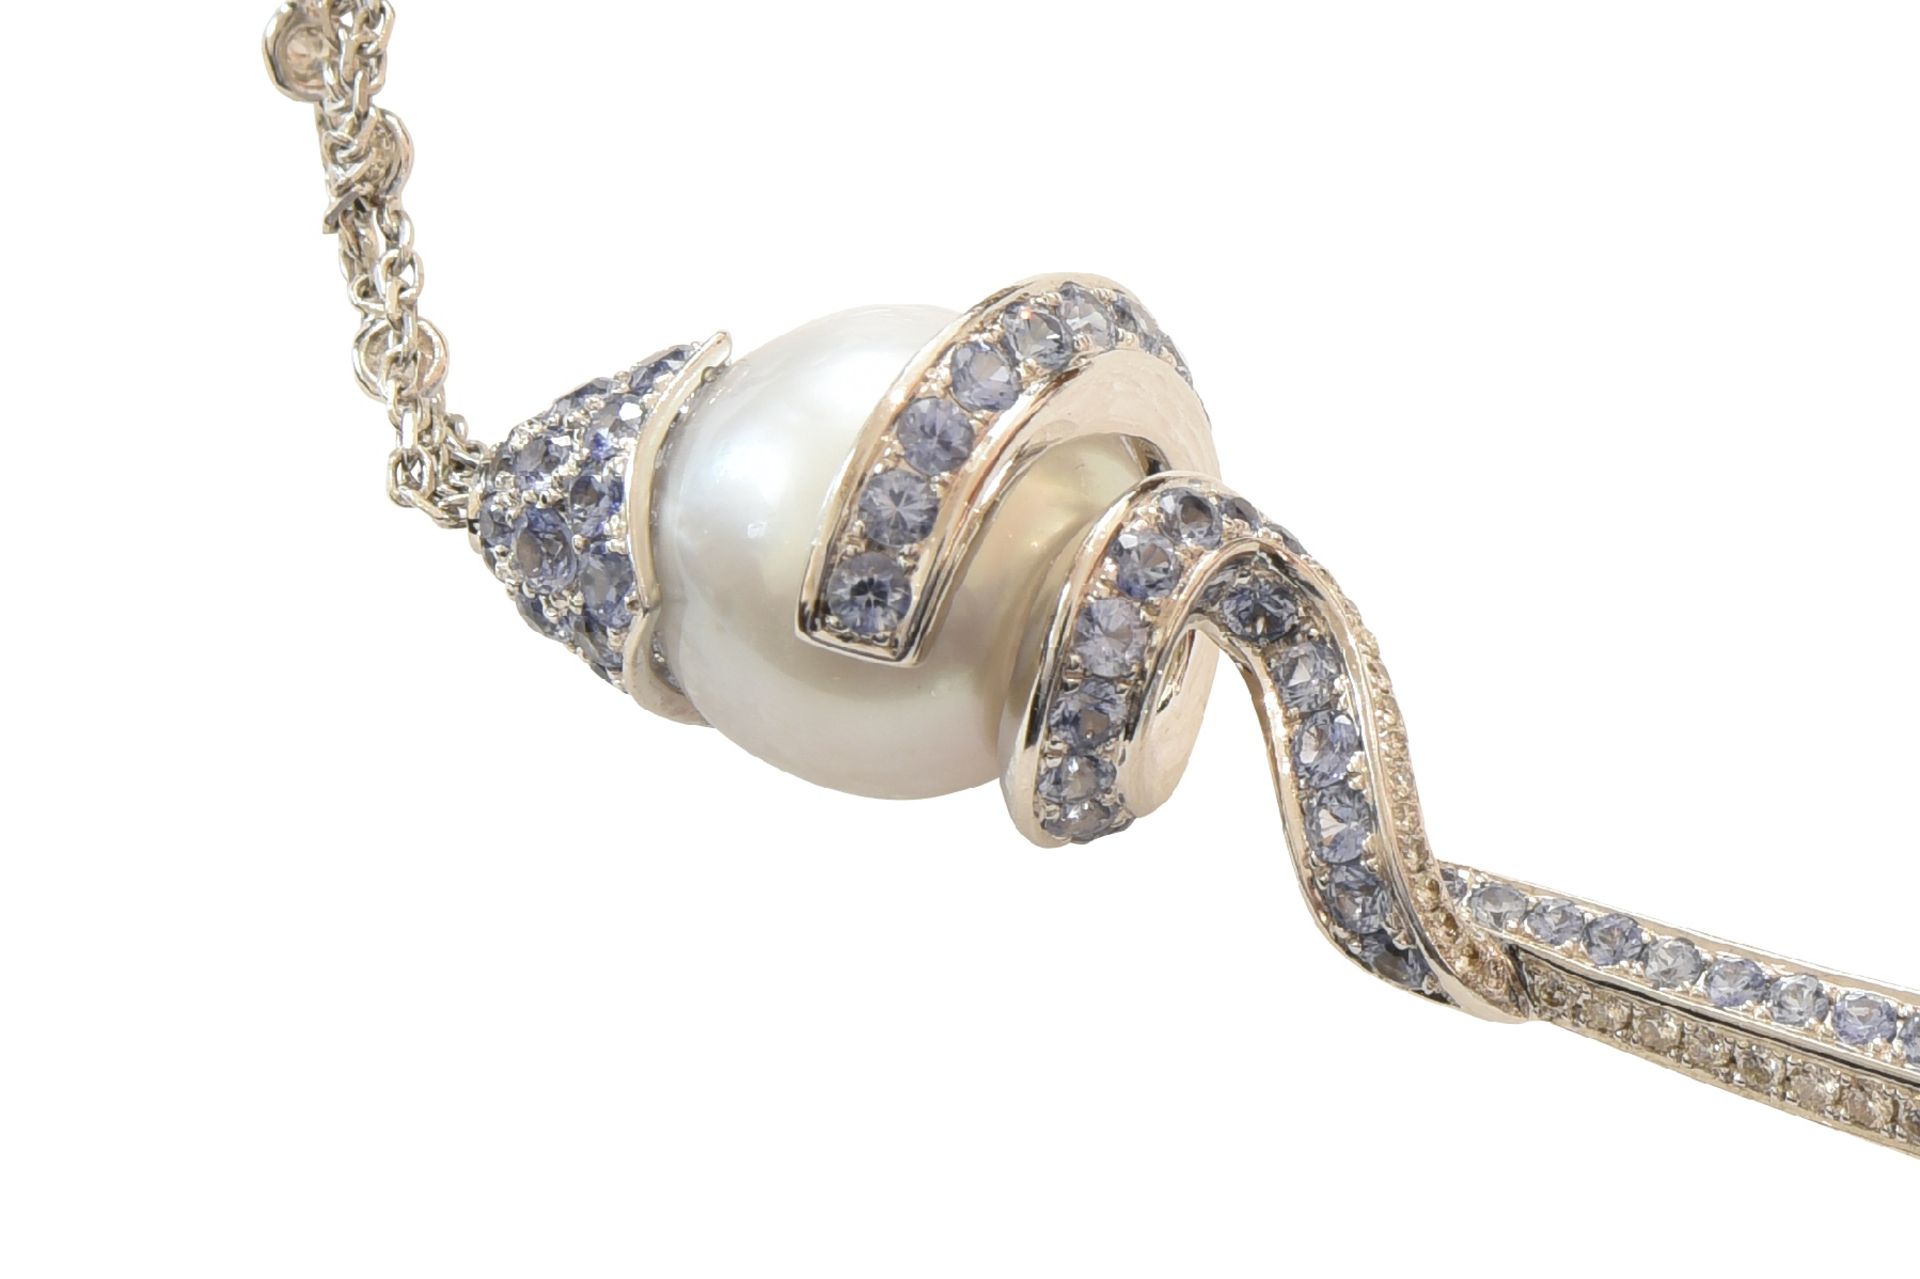 Collier Weissgold Brillanten & Saphir | Necklace Whitegold Brilliant & Sapphire - Bild 6 aus 6